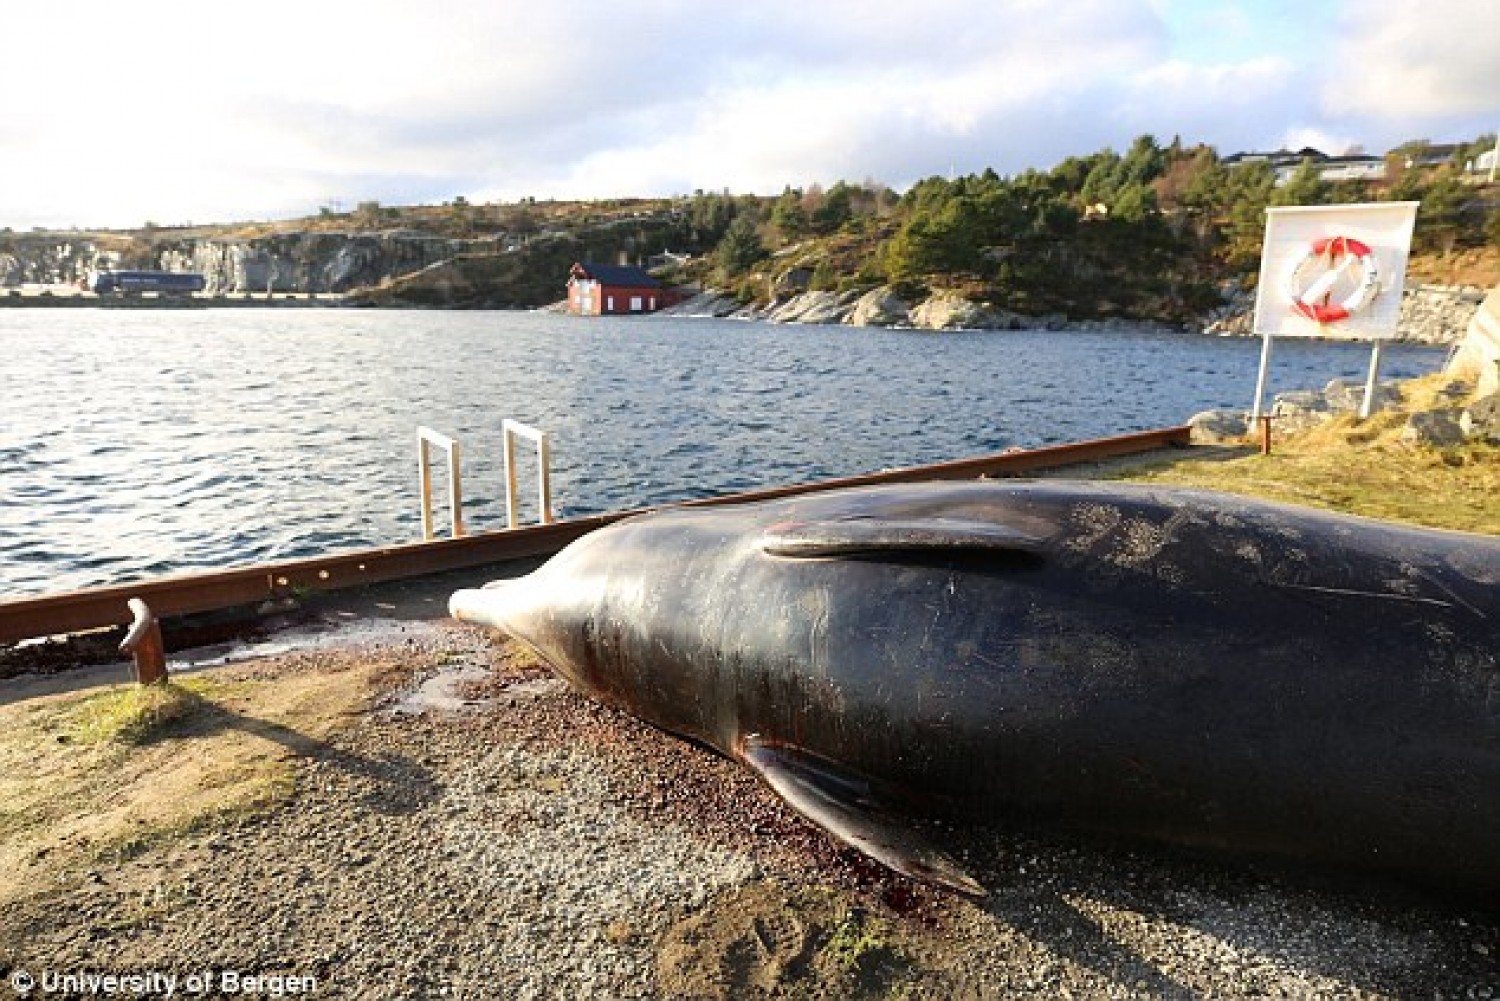  Negyven kilogramm műanyag zacskót találtak egy bálna gyomrában